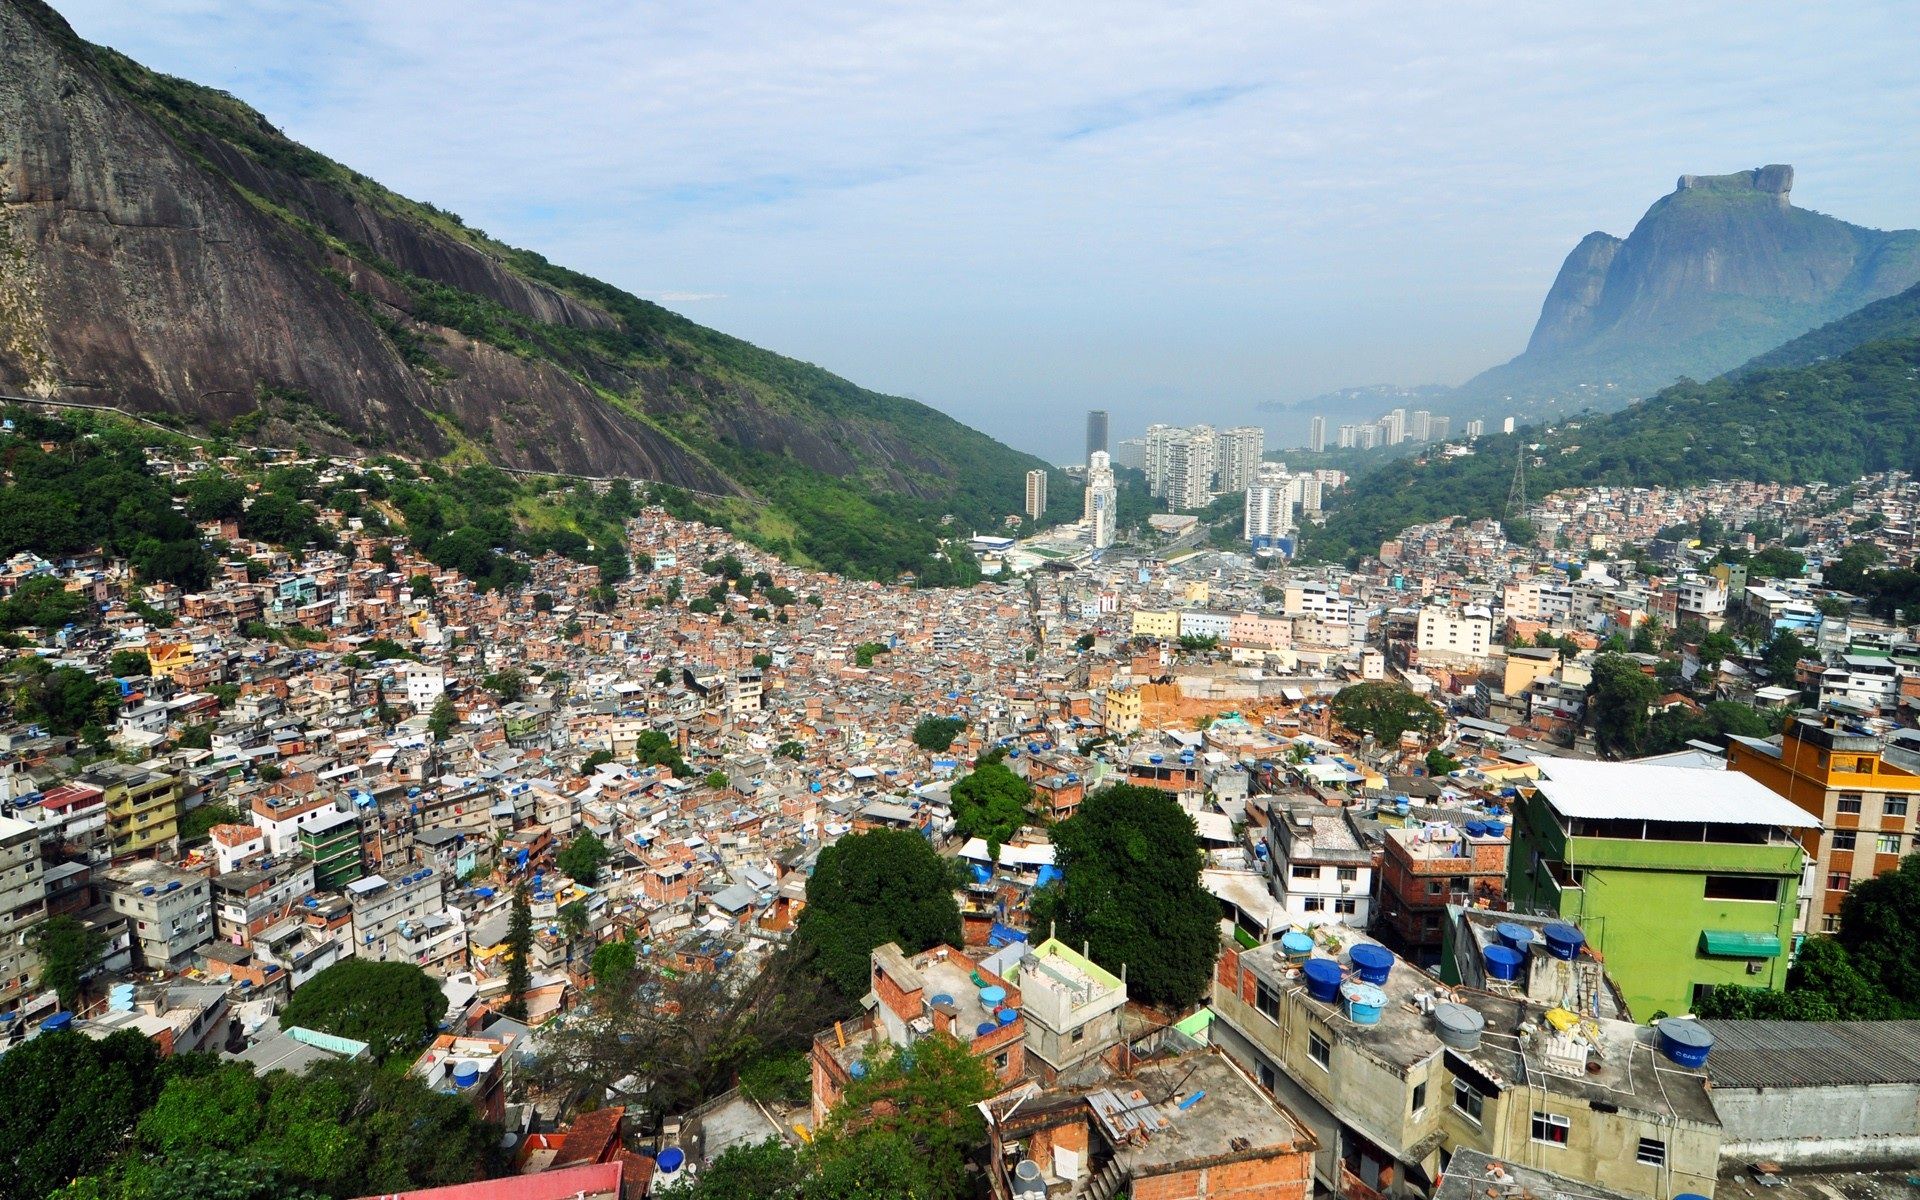 Rio de Janeiro Slum Panorama wallpaper. Rio de Janeiro Slum Panorama